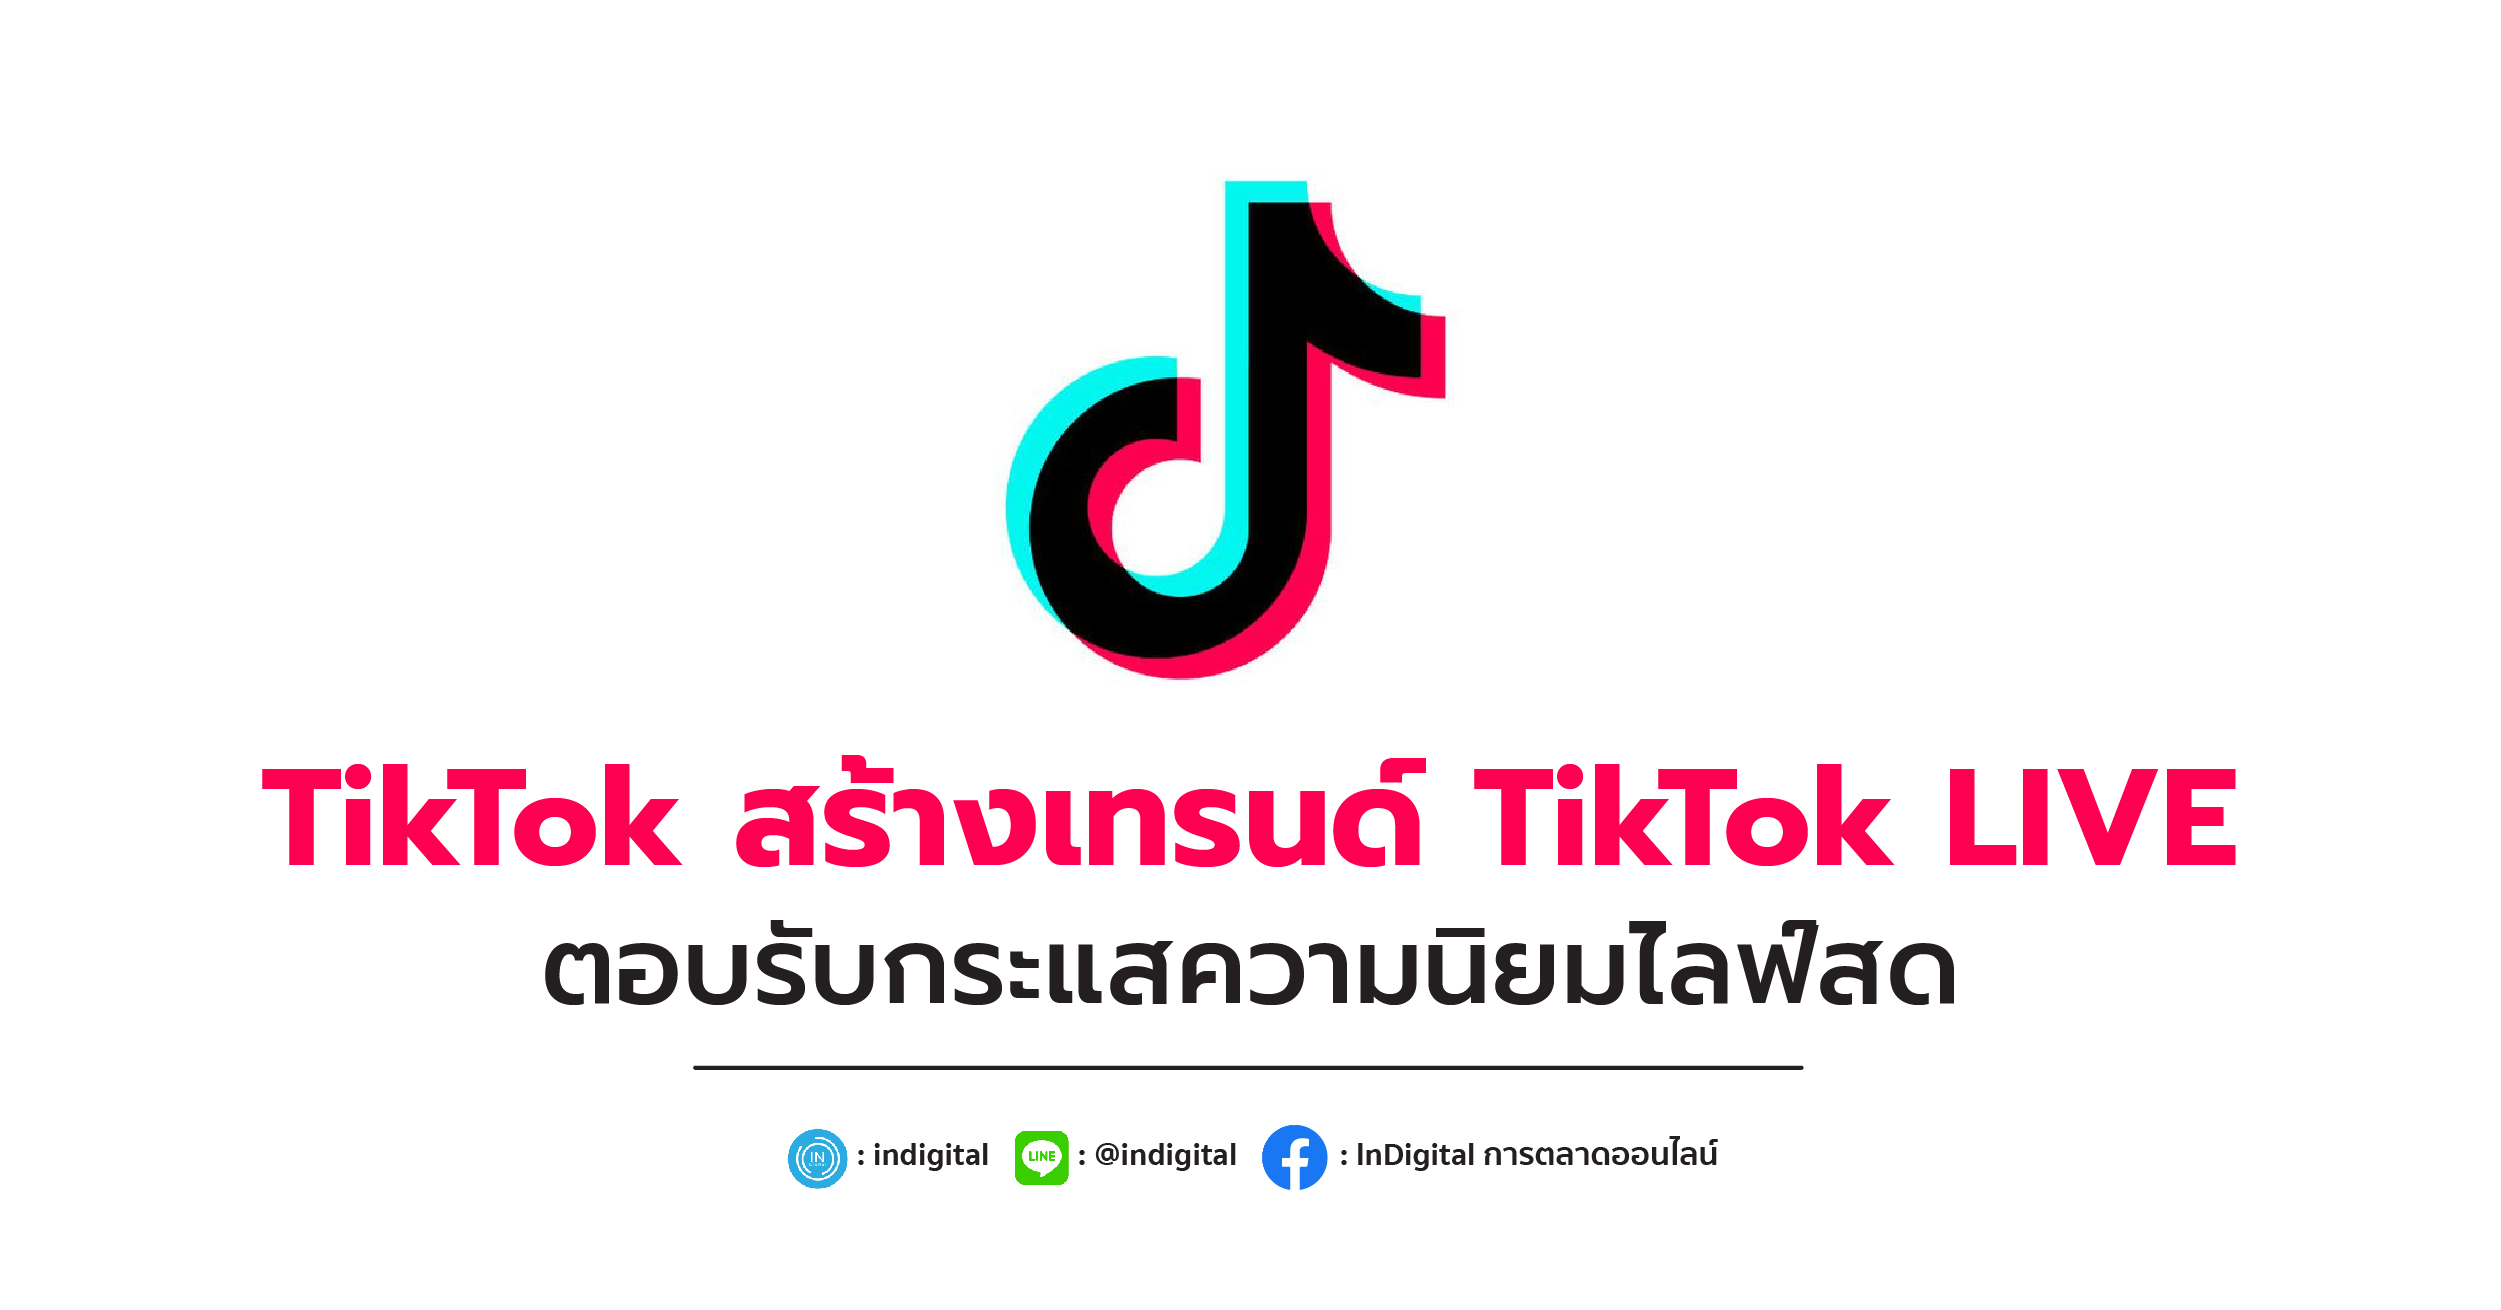 TikTok สร้างเทรนด์ TikTok LIVE ตอบรับกระแสความนิยมไลฟ์สด